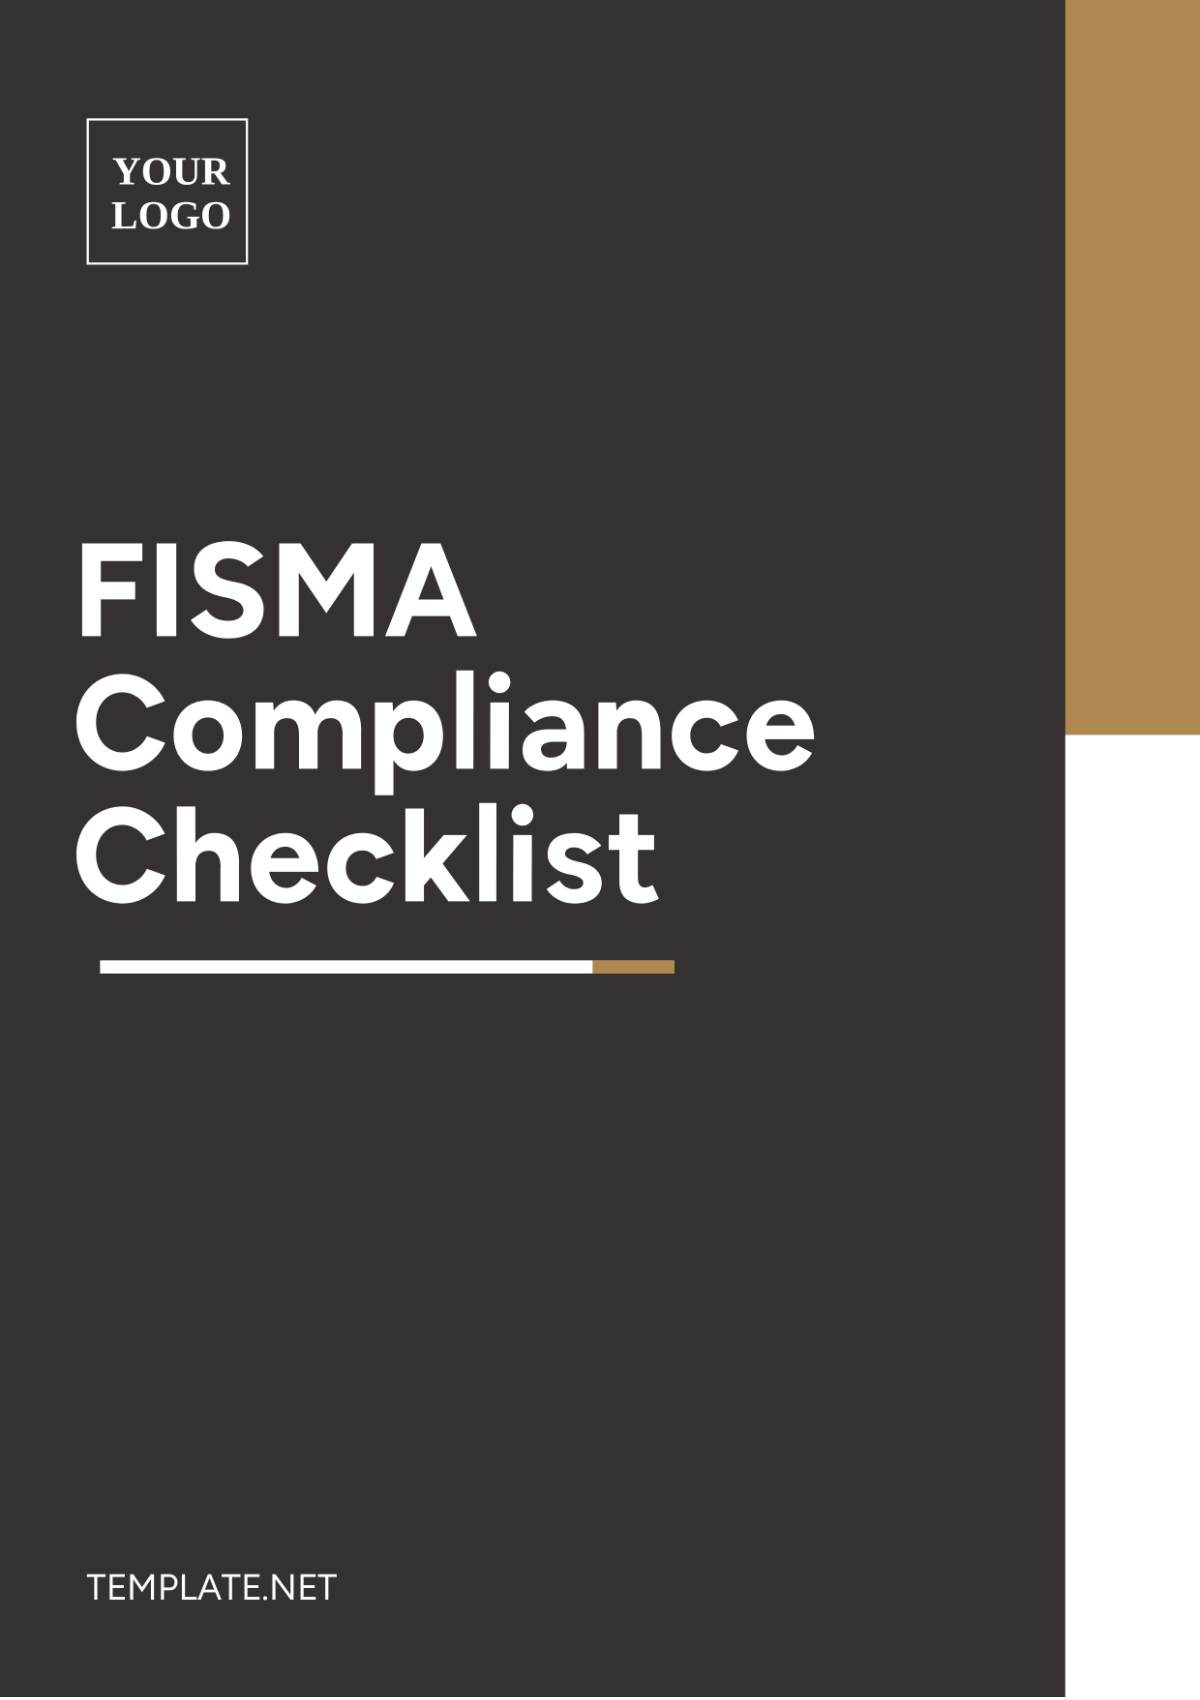 FISMA Compliance Checklist Template